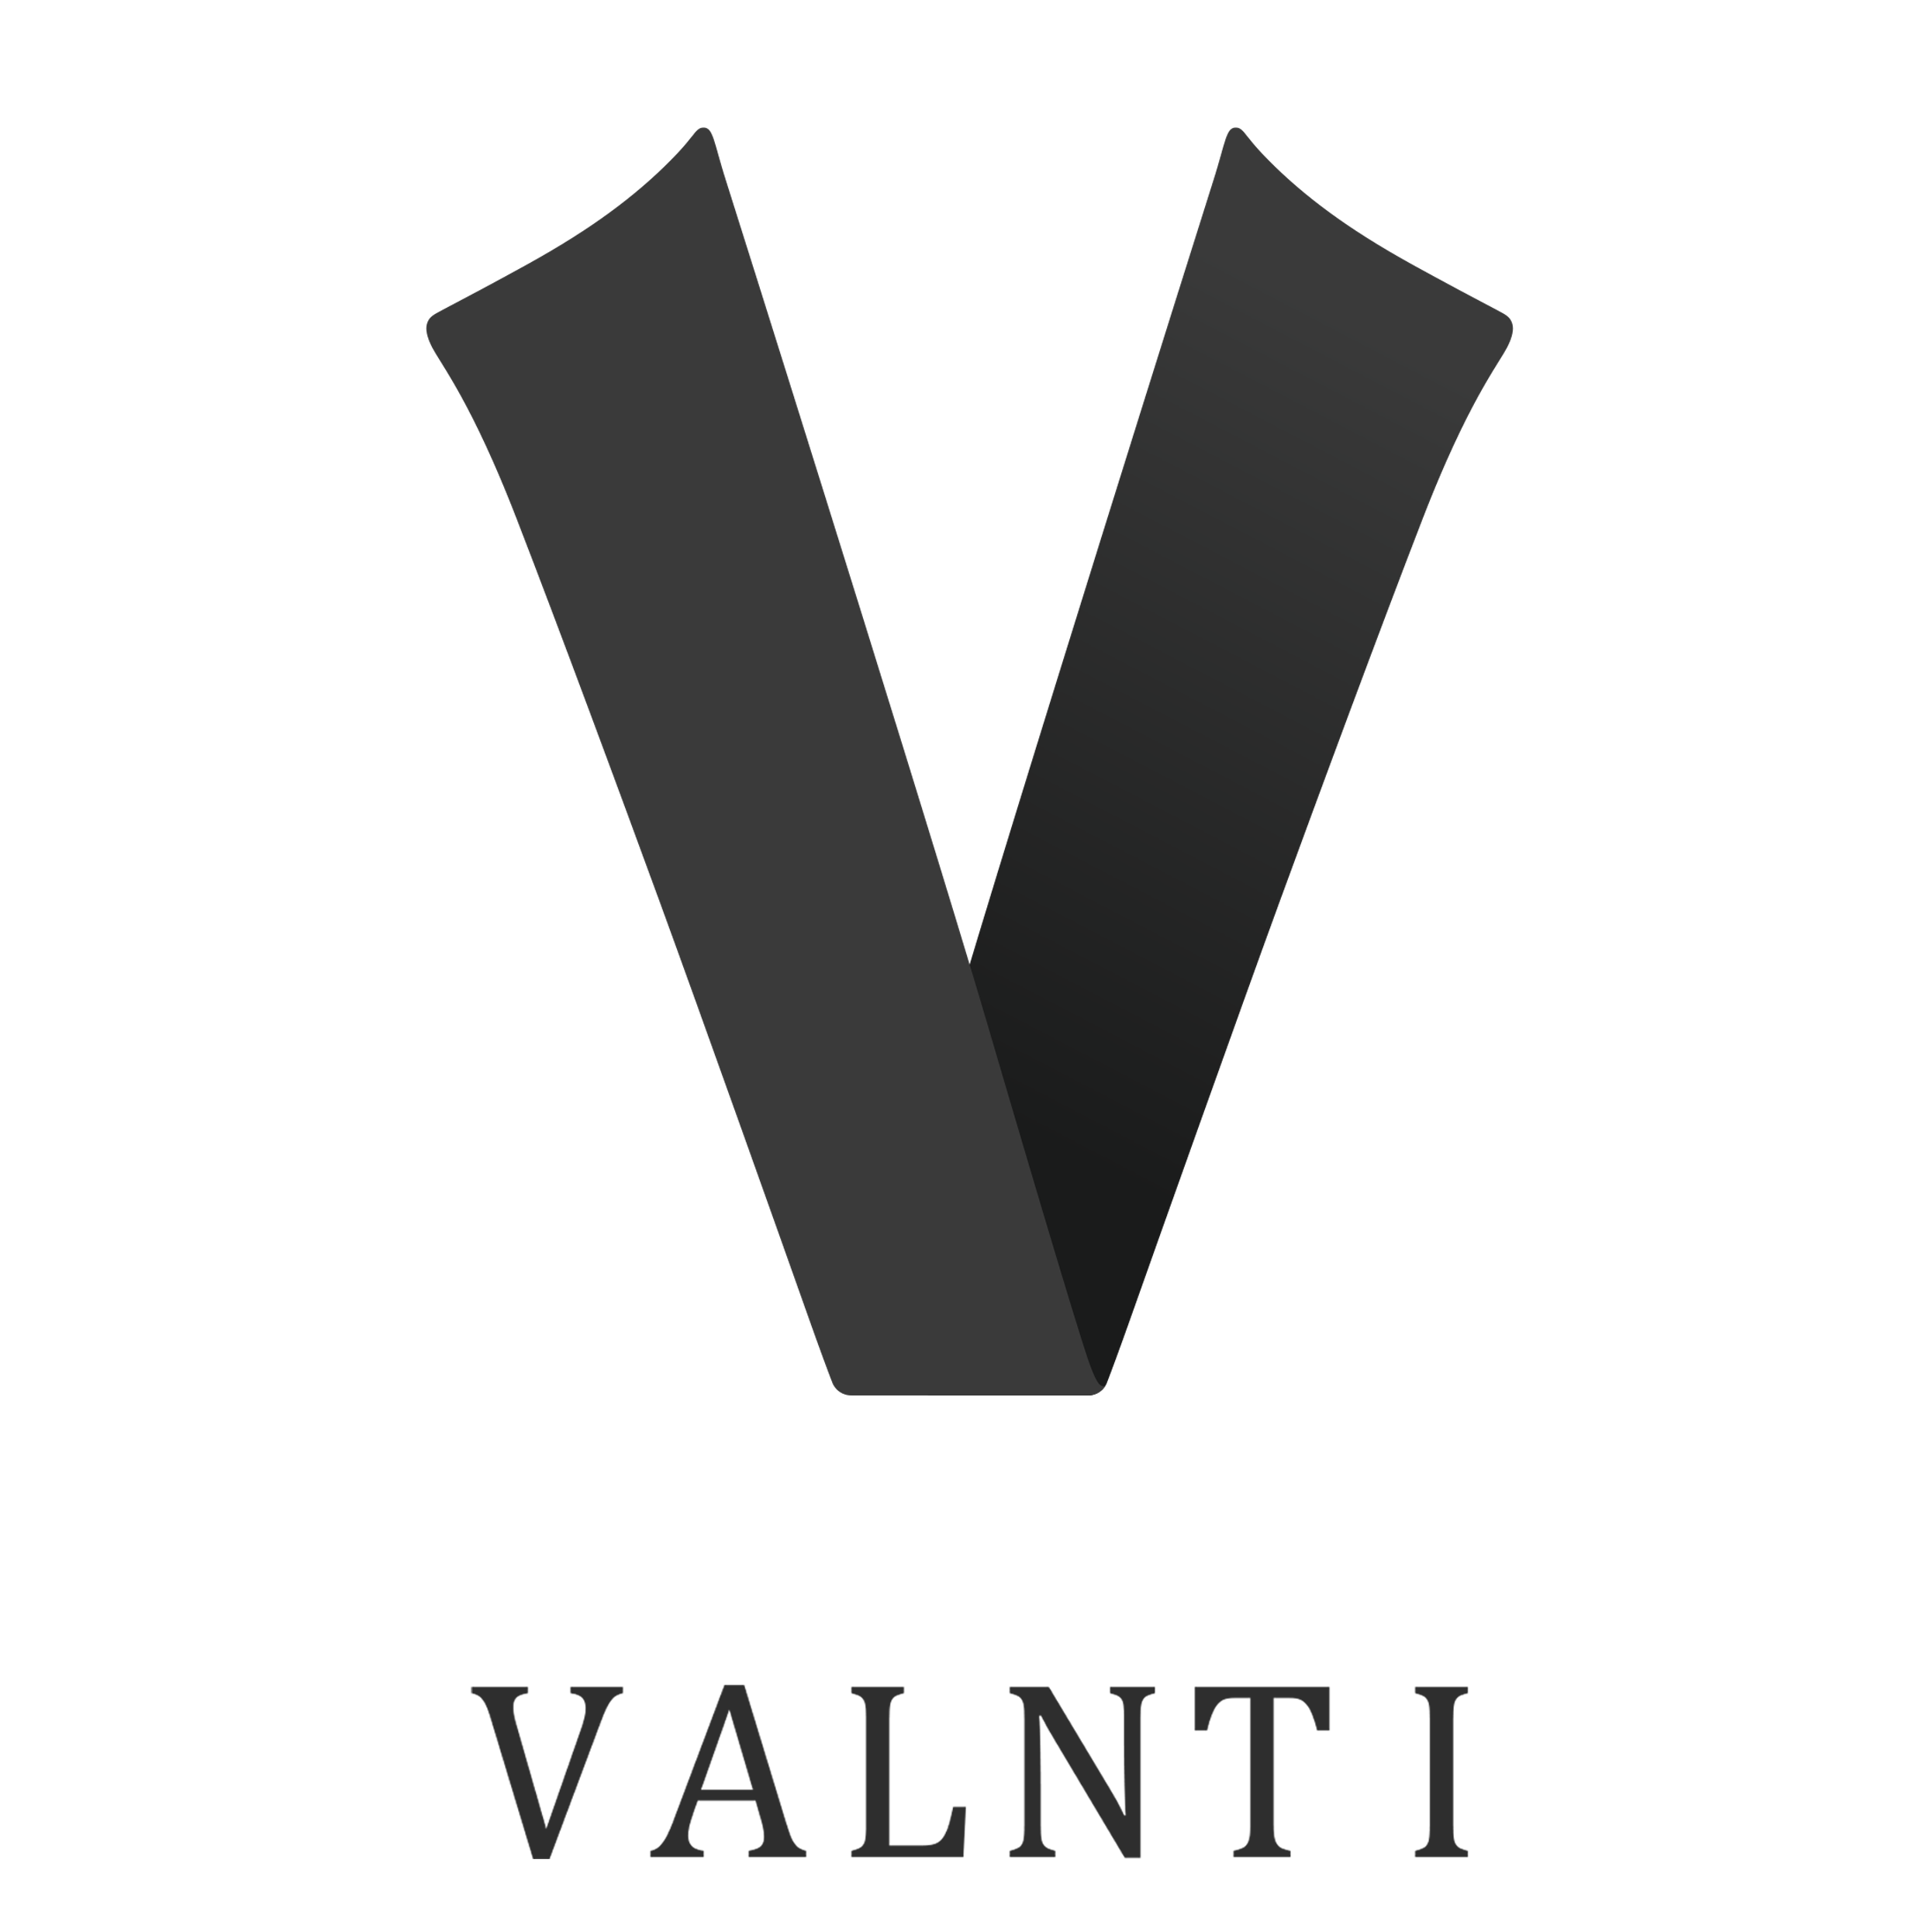 VALNTI_-_THUMBNAIL_-_PNG_3